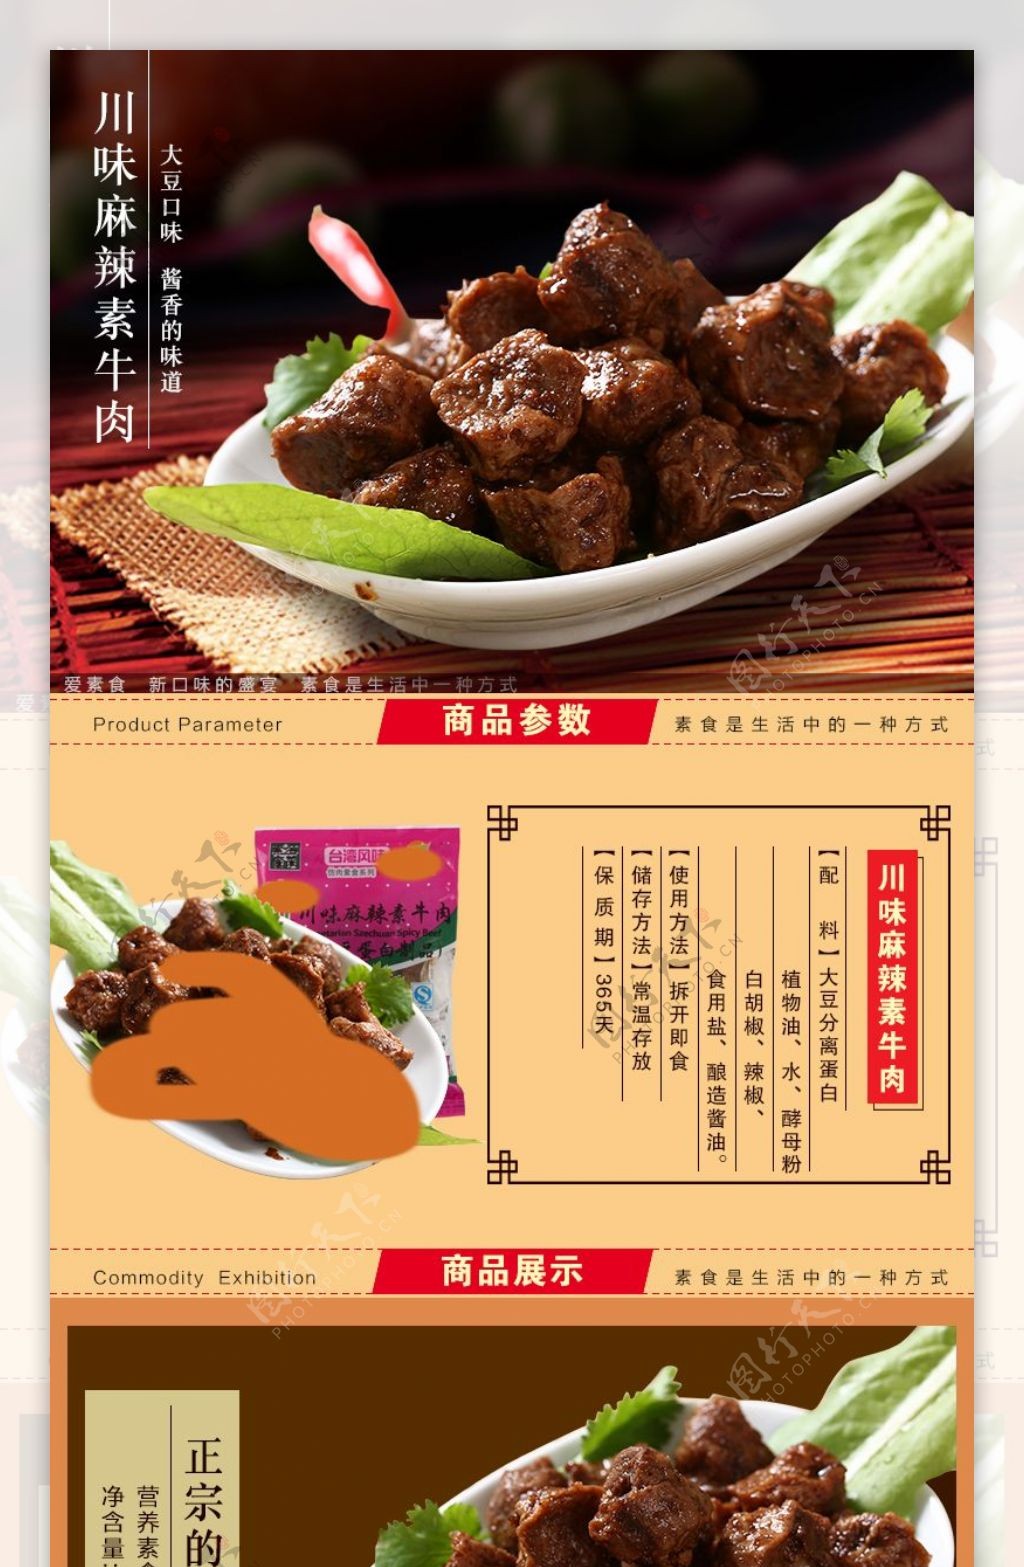 淘宝天猫店铺素食食品详情页描述页